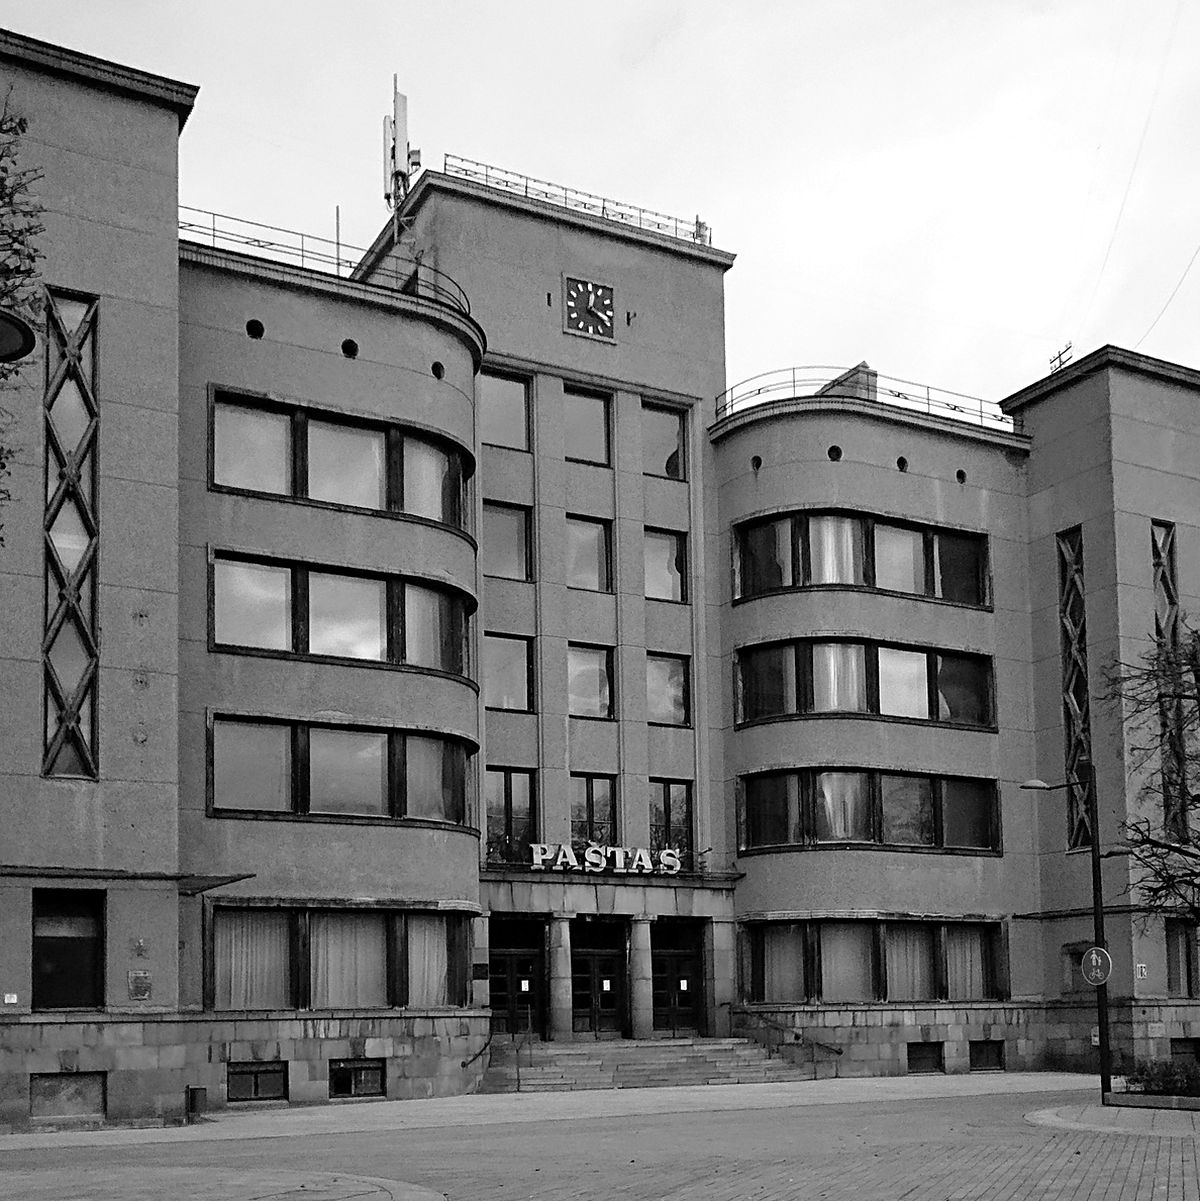 Architektūros muziejui pritaikytas Kauno centrinis paštas (arch. F.Vizbaras) galėtų tapto Europos sąjungos naujosios iniciatyvos apologetu. Foto : ©PILOTAS.LT